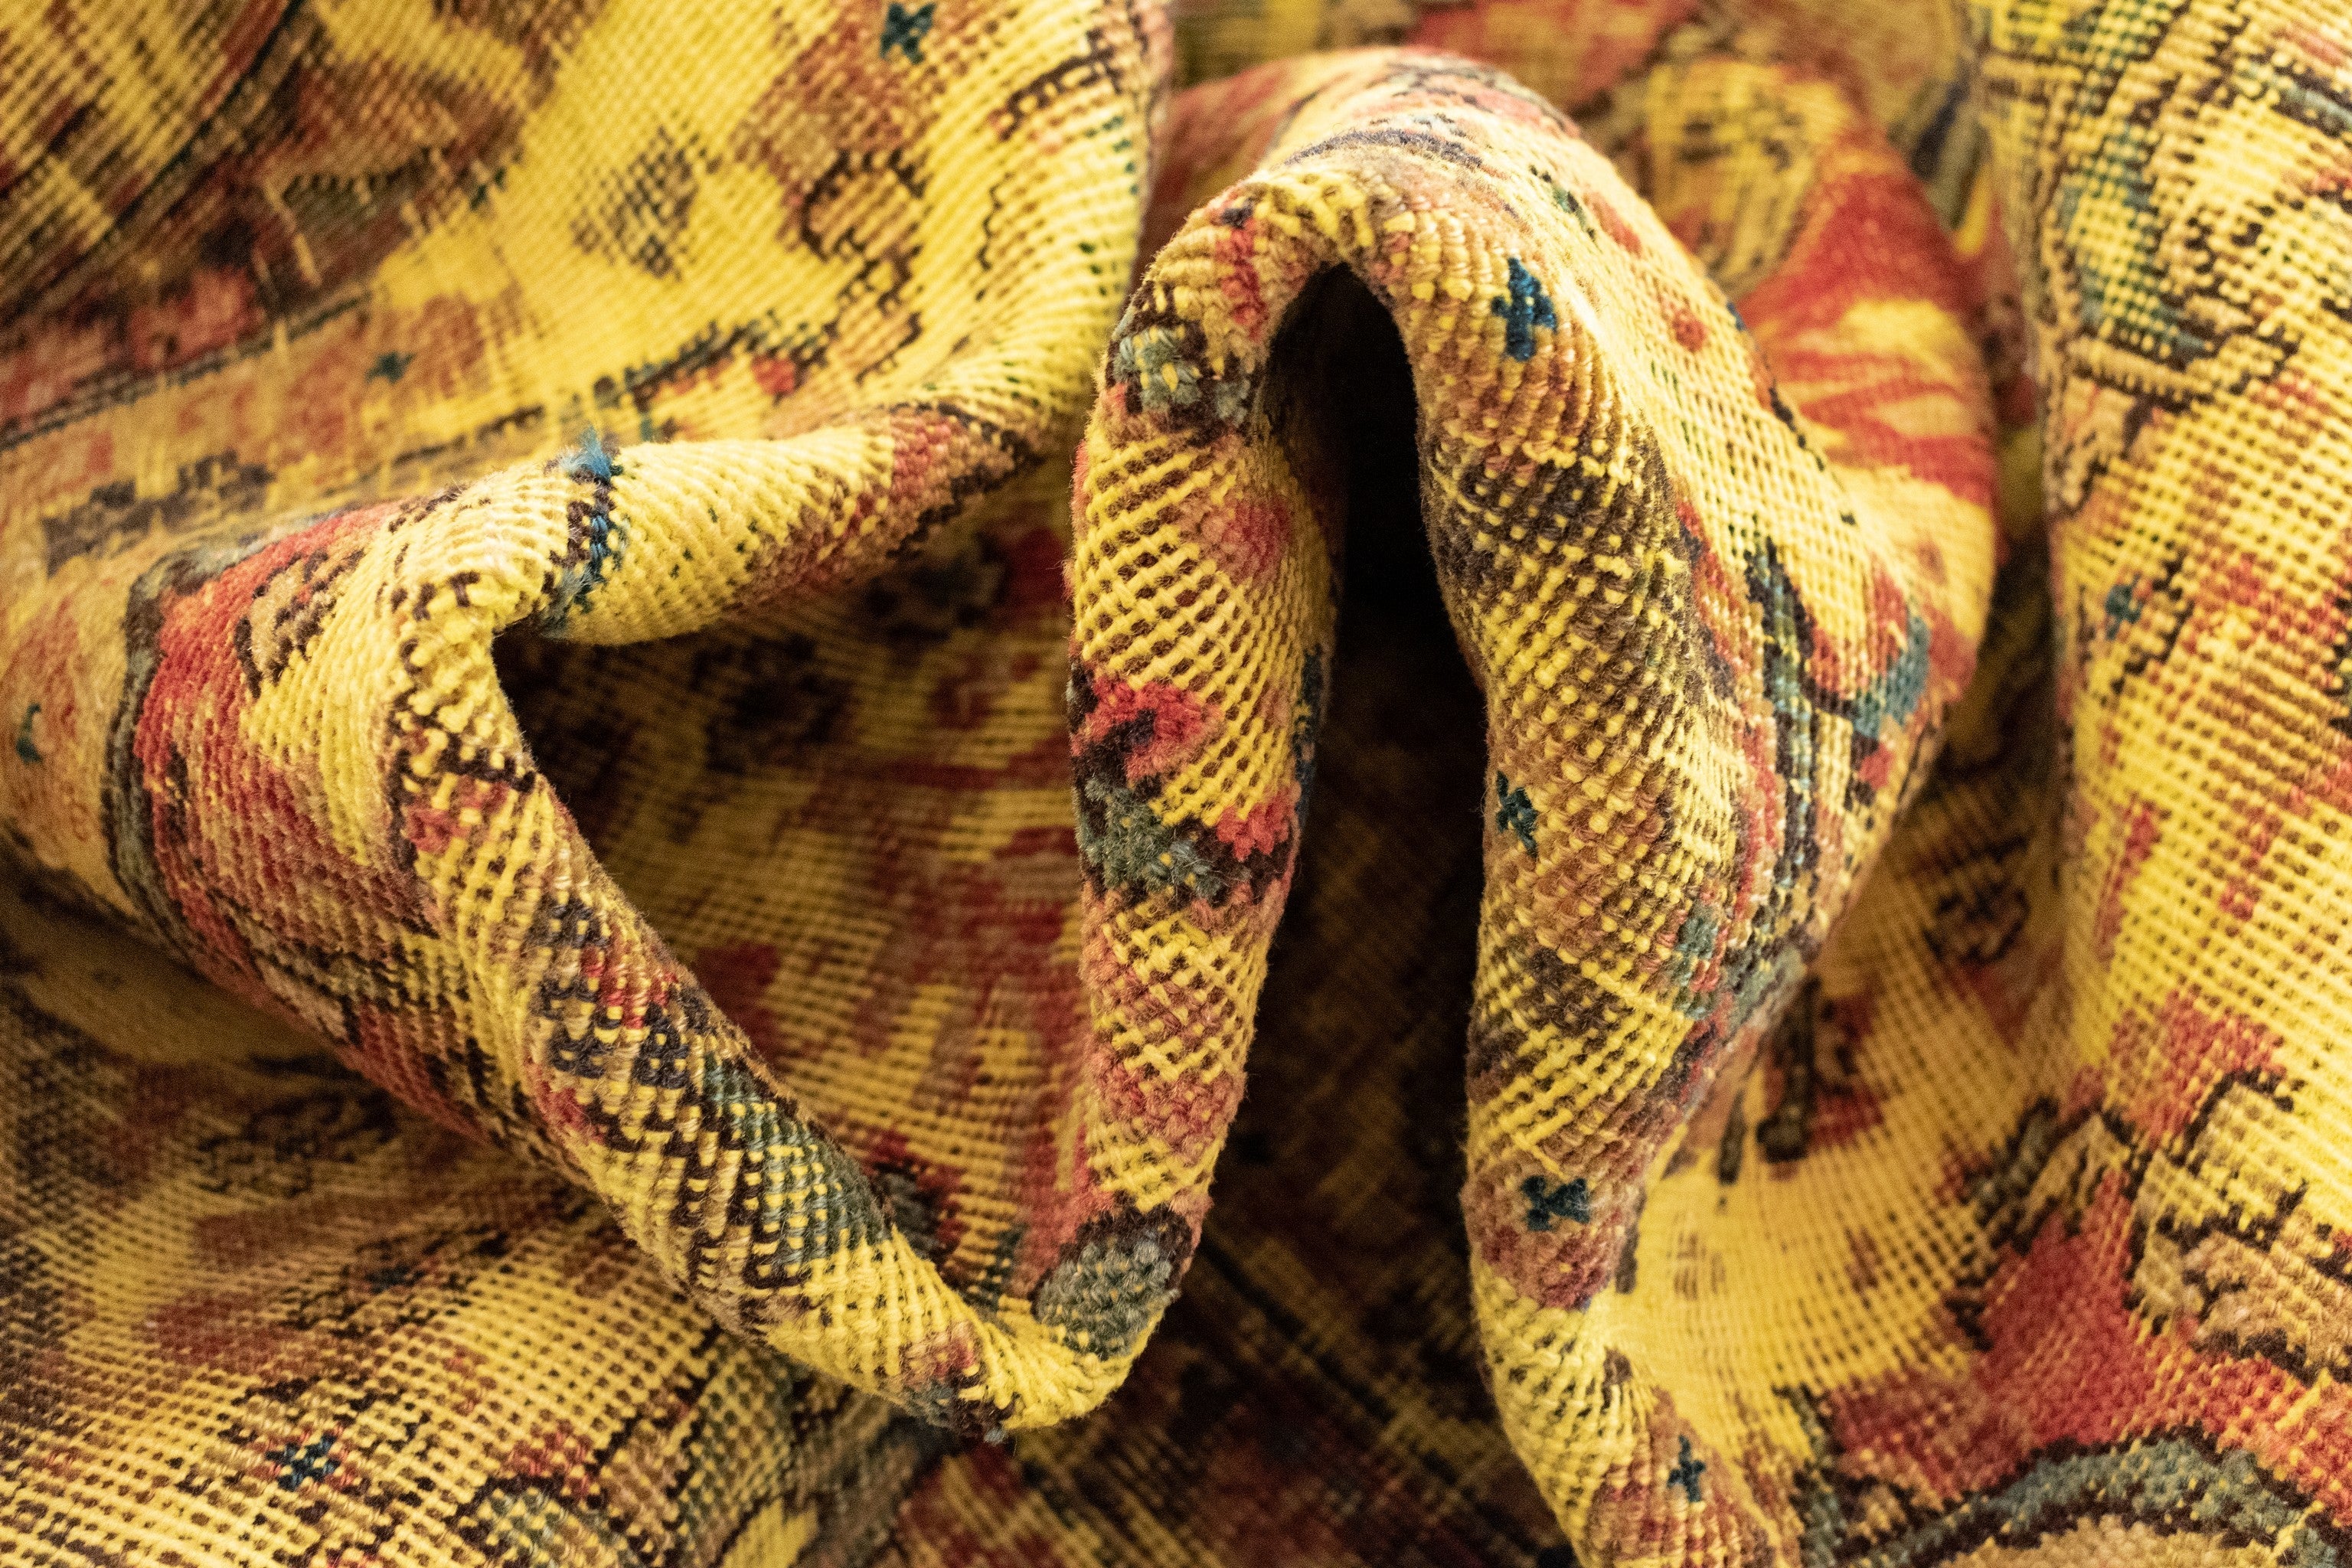 138x189 Vintage Royal in Gelb präsentiert im Onlineshop von KAQTU Design AG. Teppich ist von Vidal